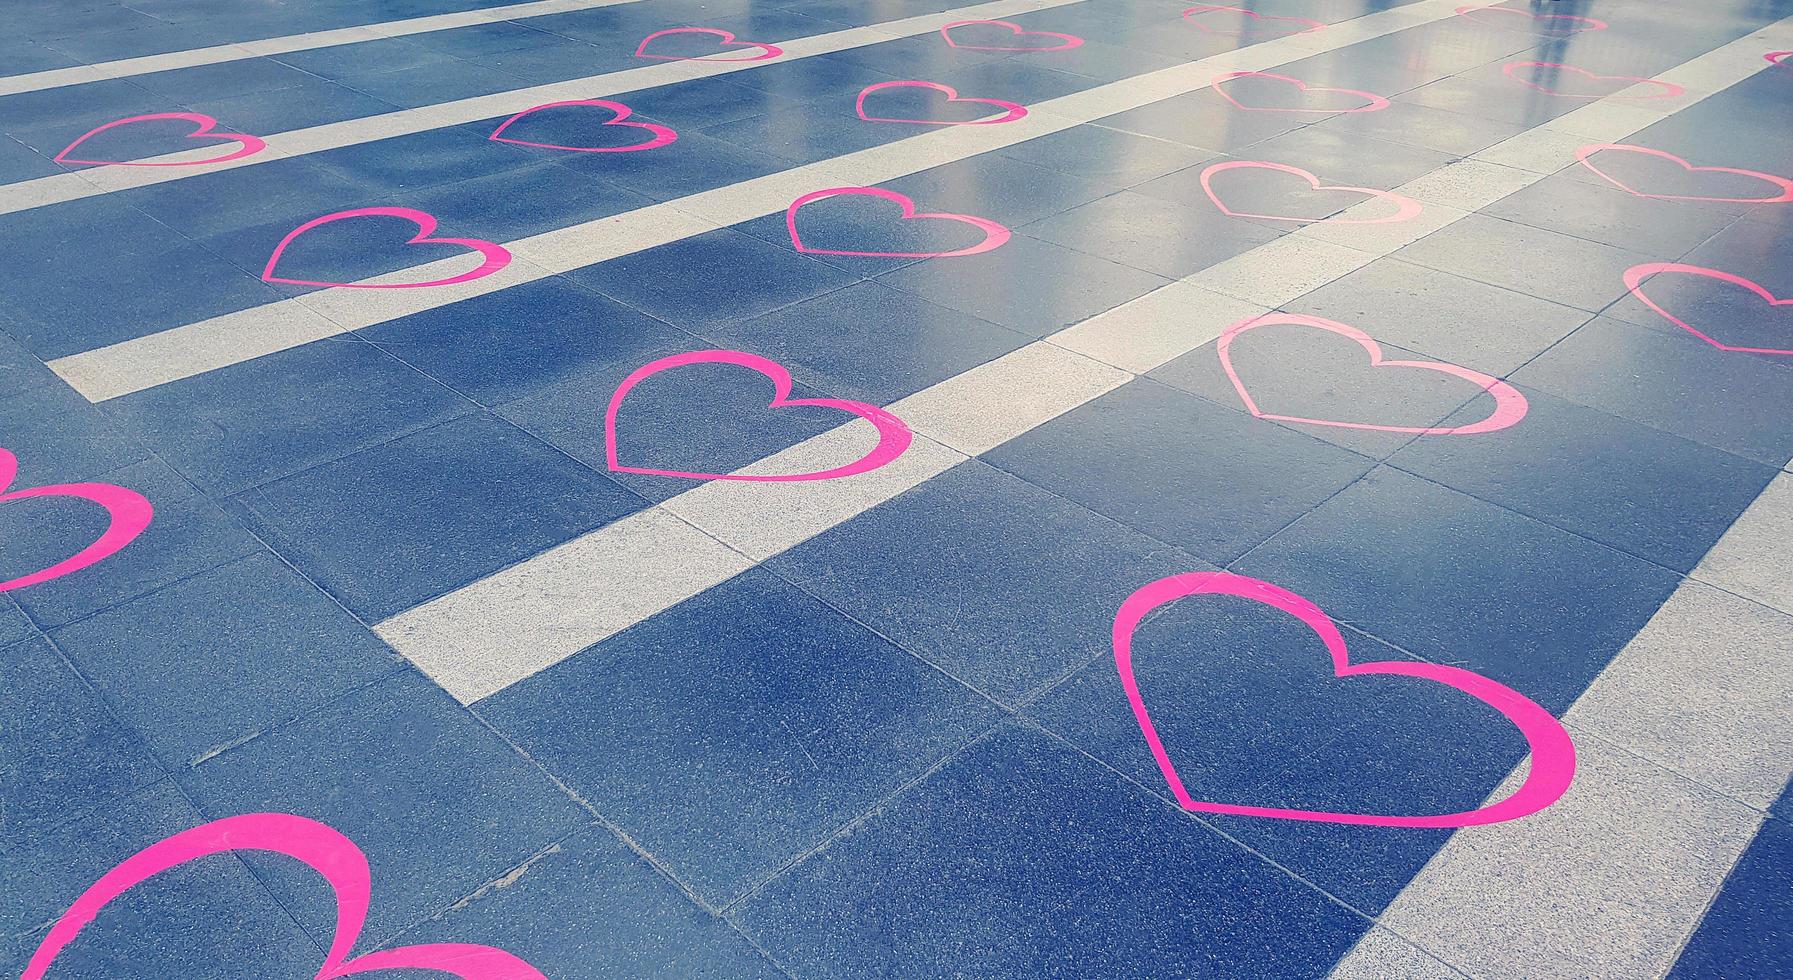 coração rosa decore com linha branca em mármore preto ou piso de granito. decoração no festival dos namorados ou celebração em filtro azul e tom vintage. foto